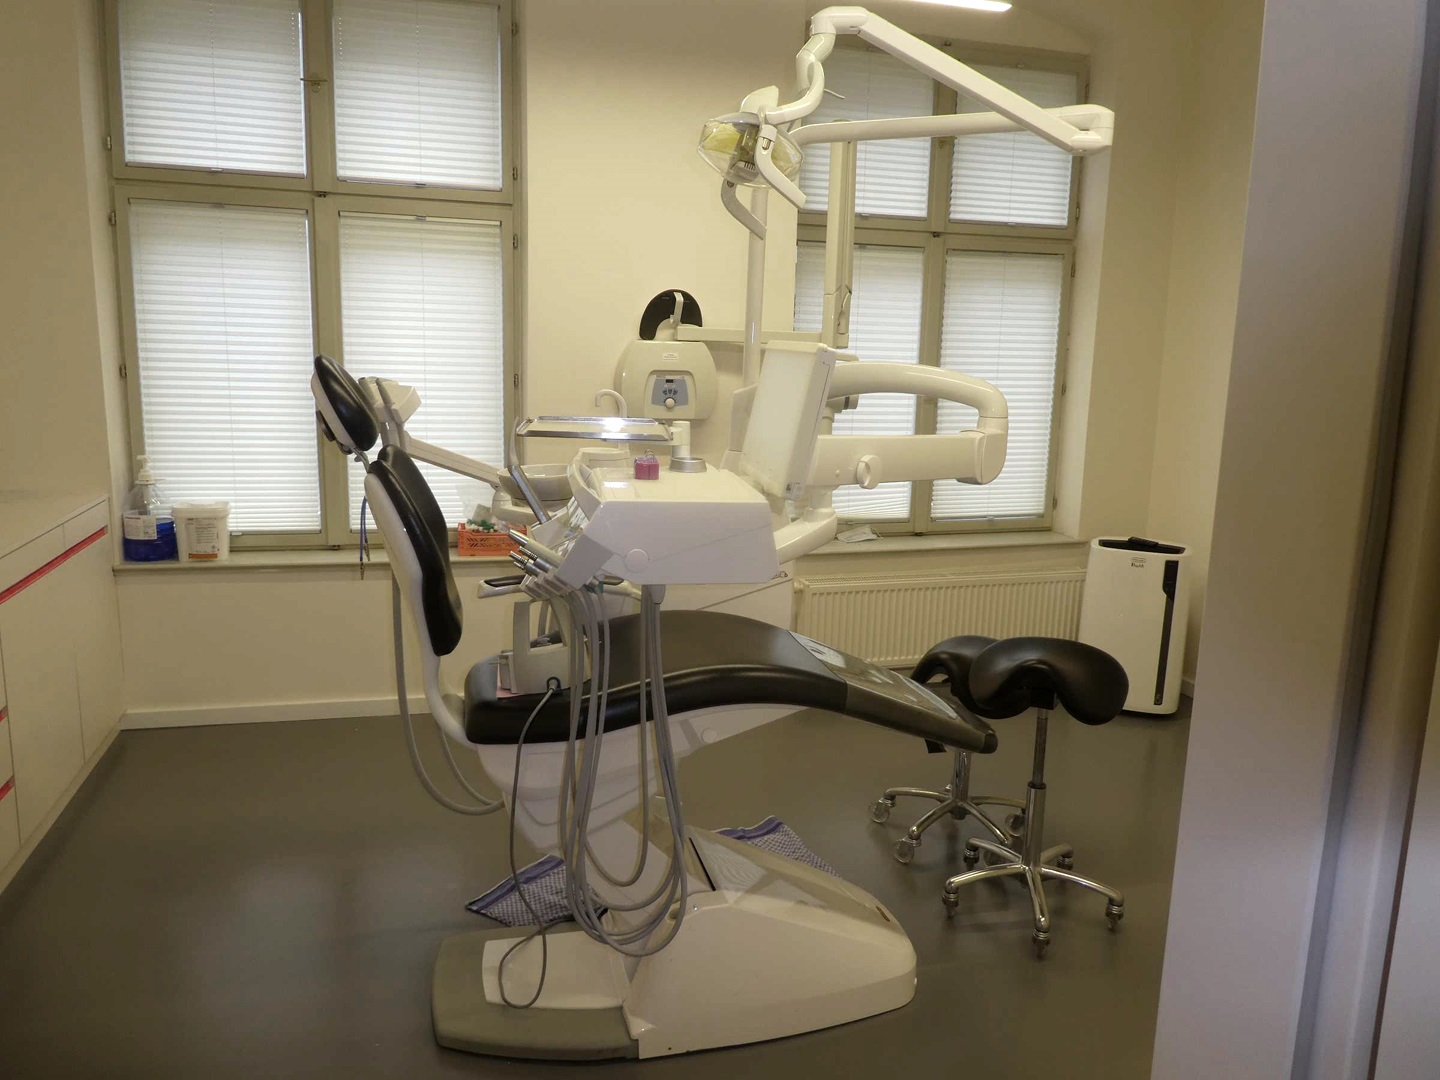 Medizintechnik und Ausstattung einer Dental-/Zahnarztpraxis